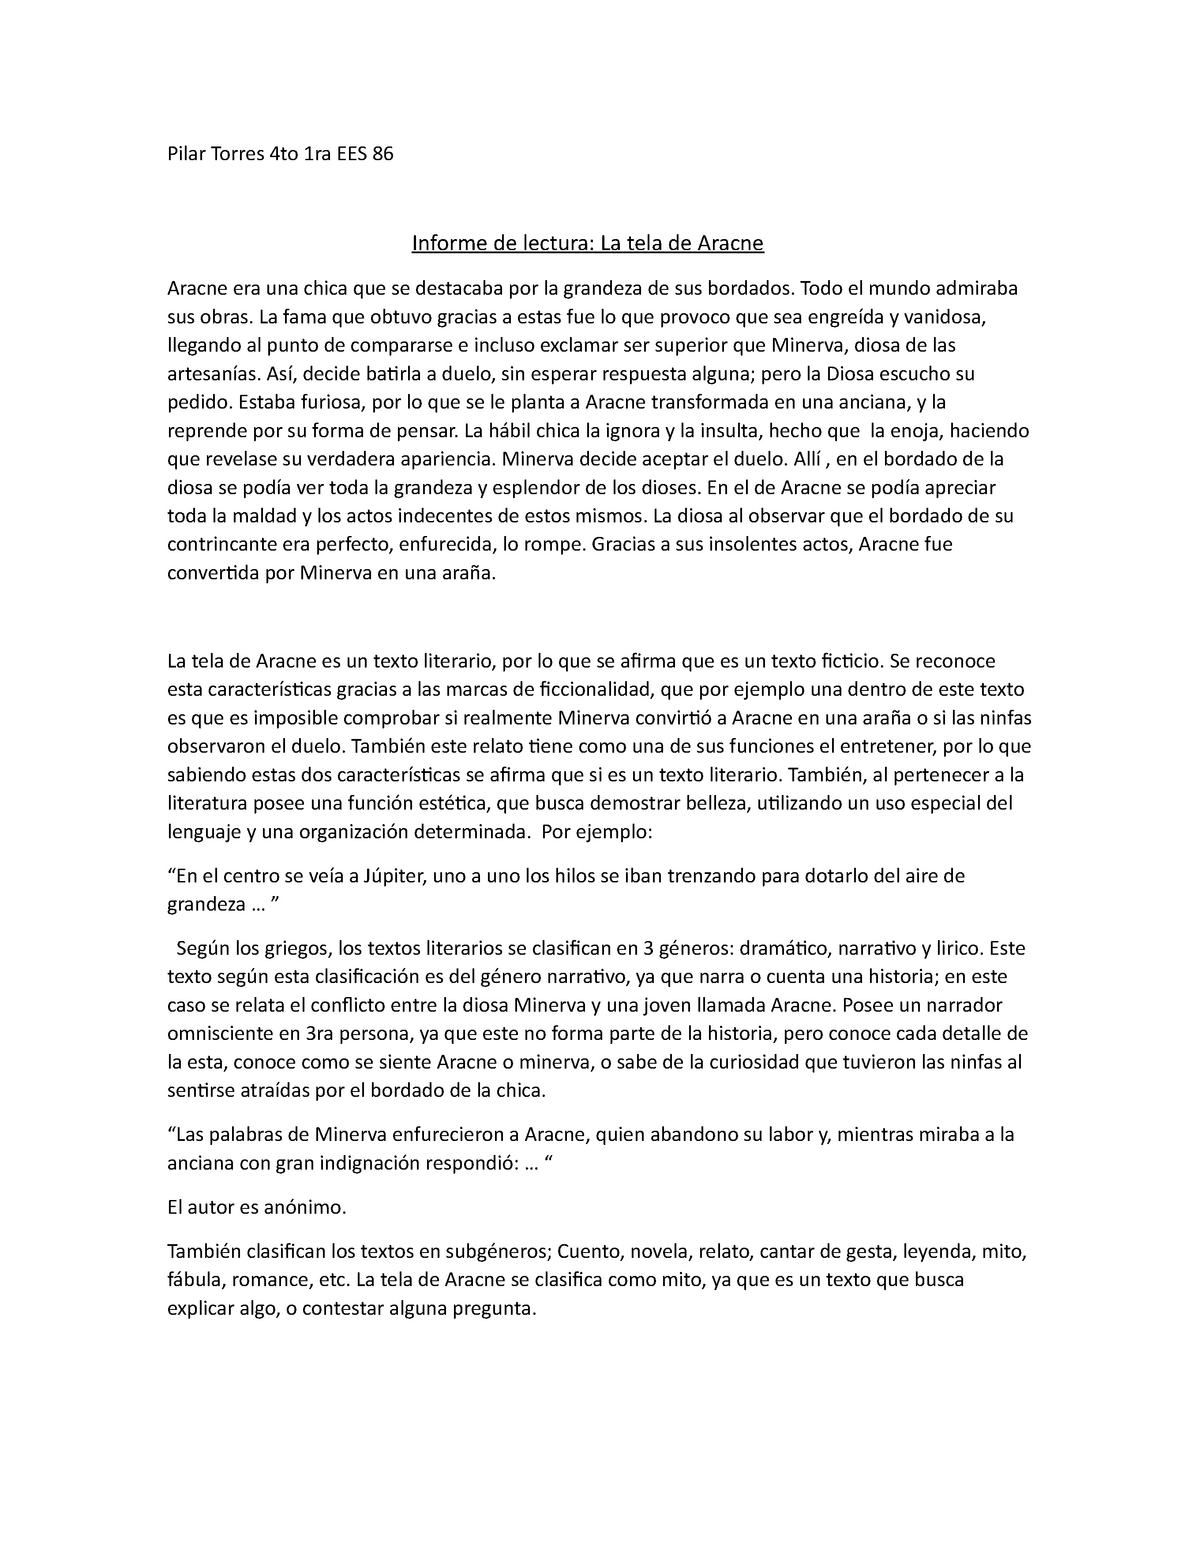 TELA DE Aracne Insta Nashe Dale ppppo - Literatura Latinoamericana ...